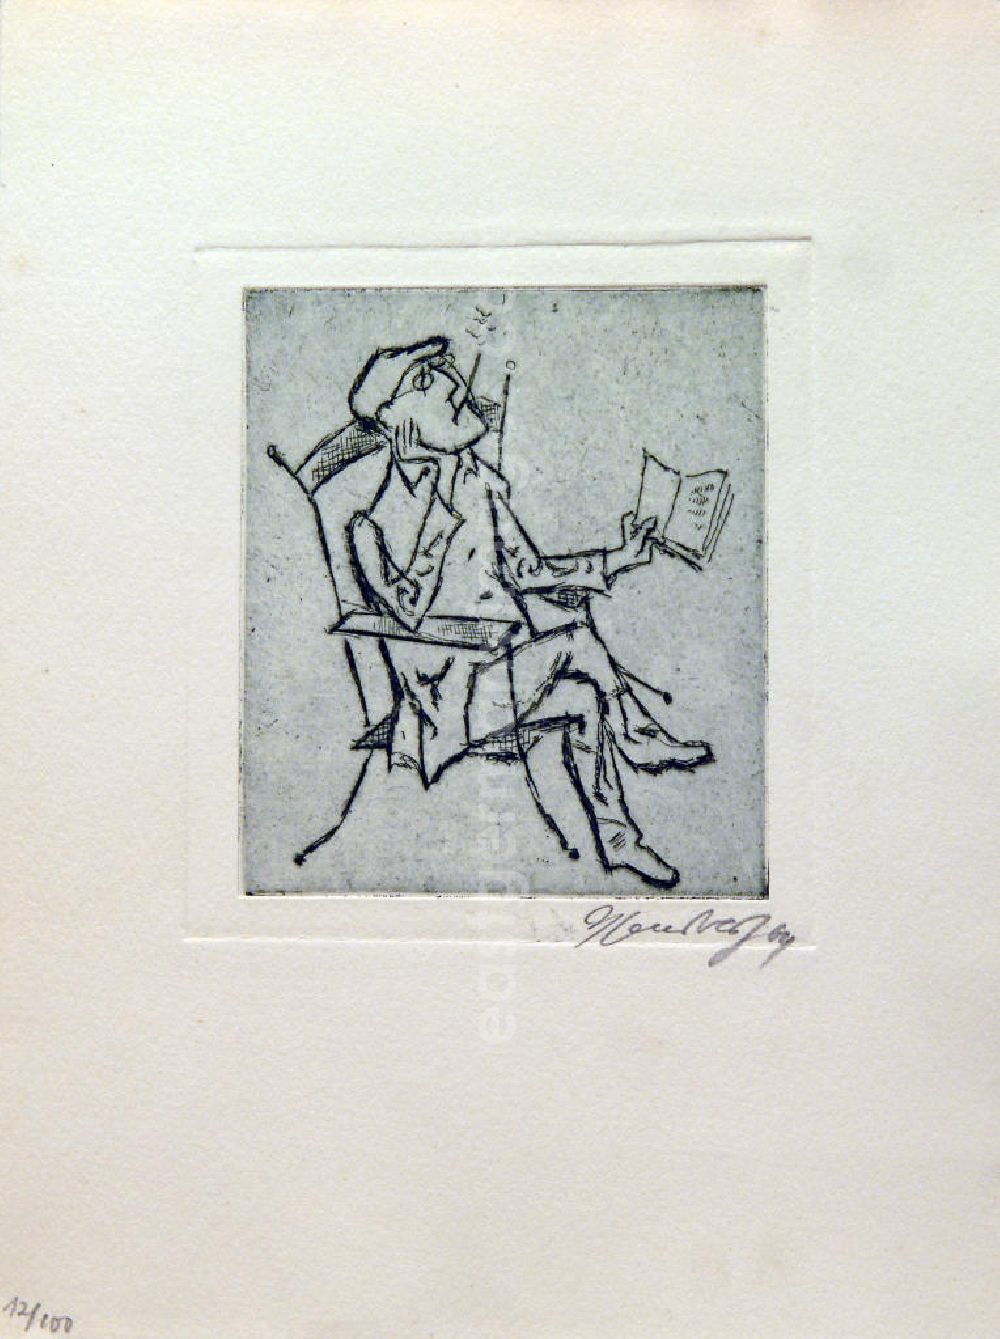 GDR image archive: Berlin - Grafik von Herbert Sandberg über Bertolt Brecht (*10.02.1898 †14.08.1956) b.b. aus dem Jahr 1964 (Brecht im Sitzen beim Lesen) 11,2x9,8cm Radierung, handsigniert, 12/10